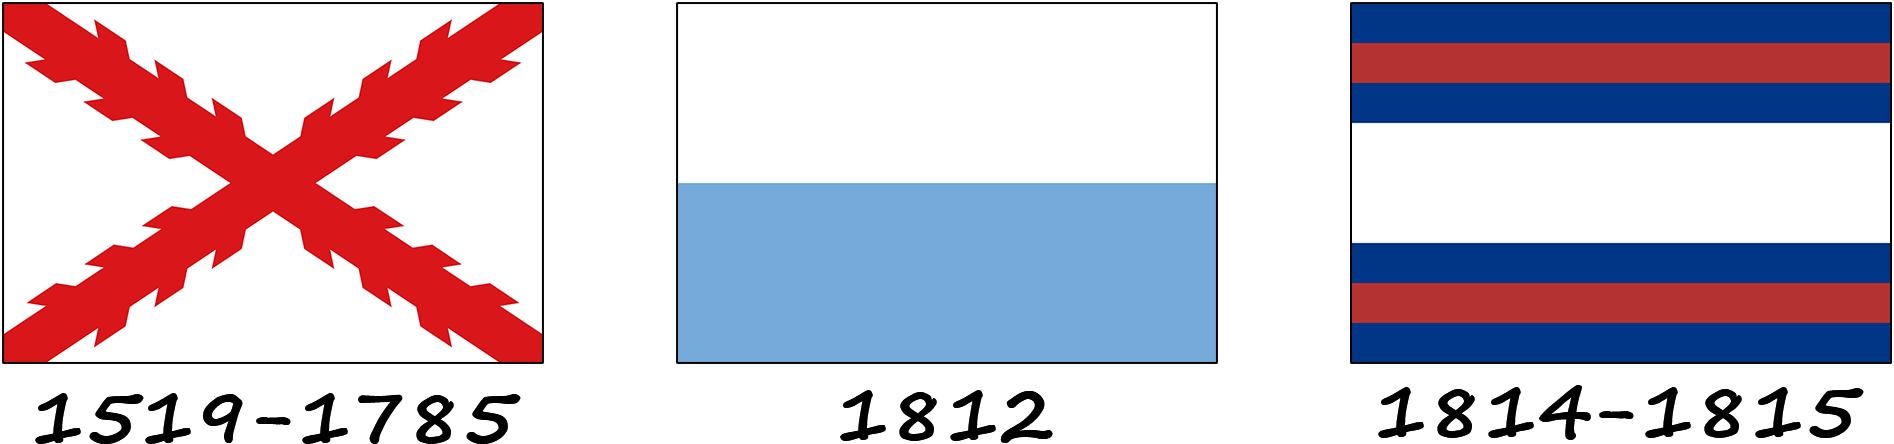 Historia de la bandera de Uruguay